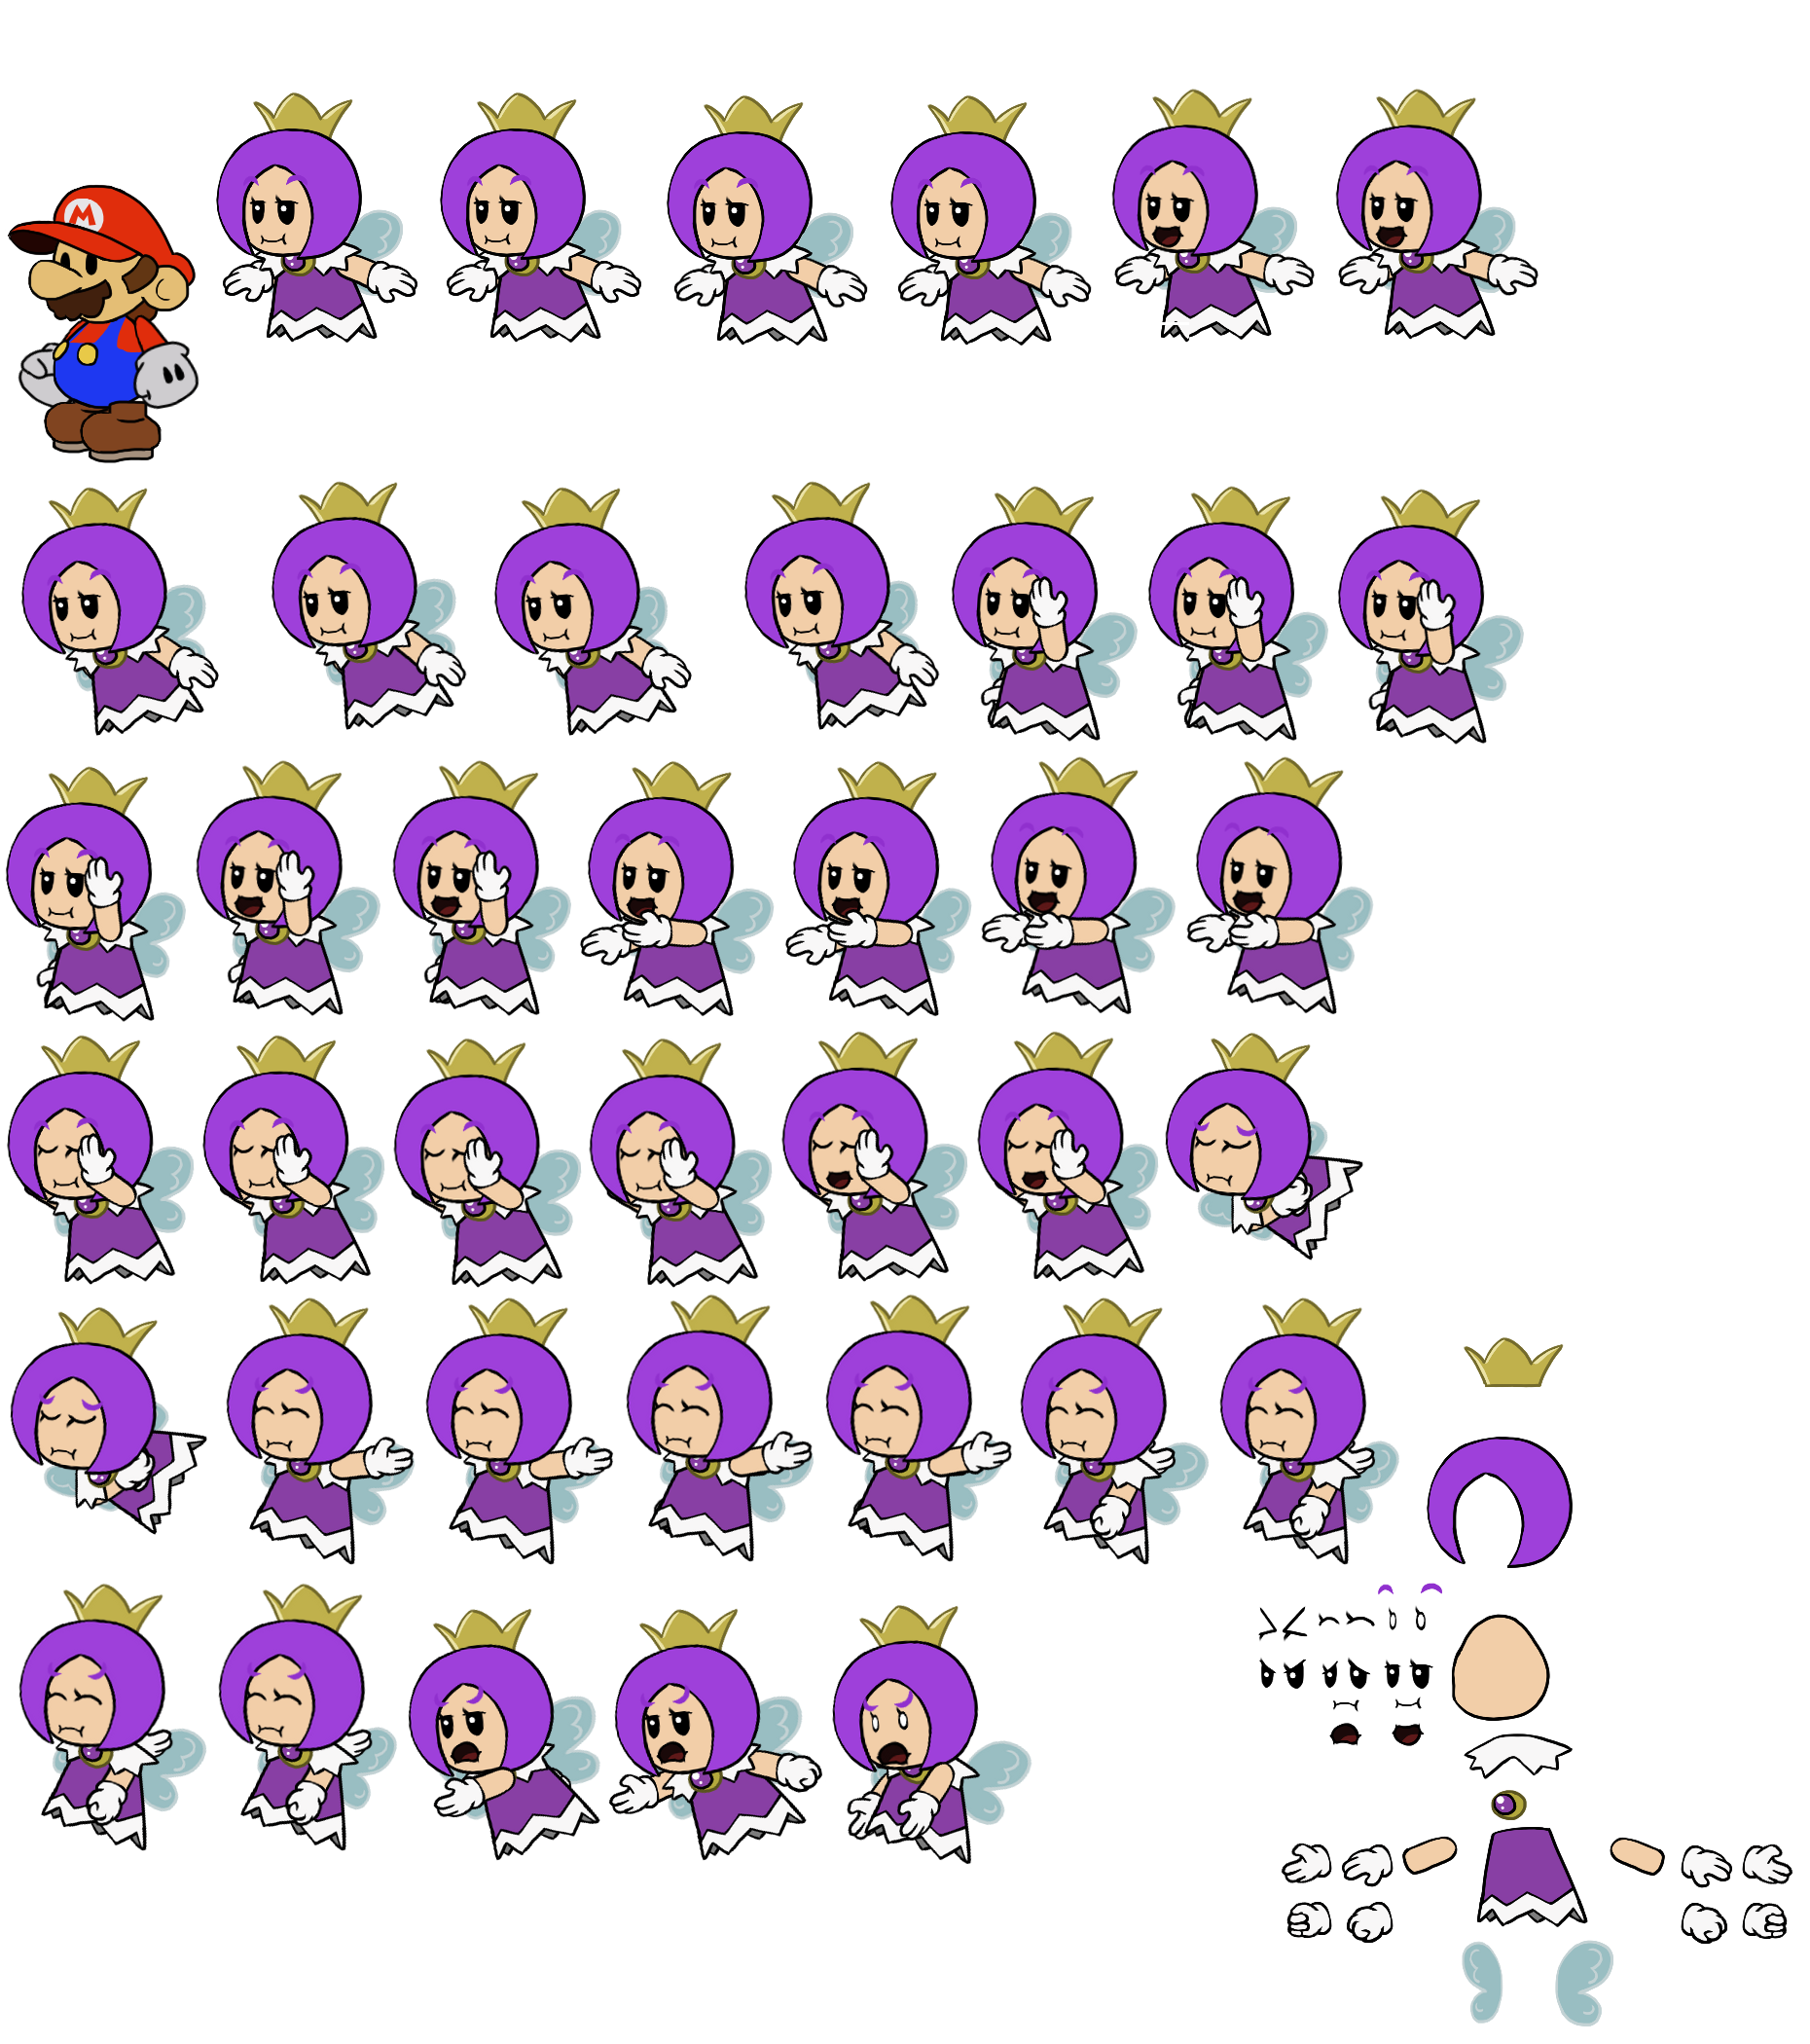 Purple Sprixie Princess (Paper Mario-Style)